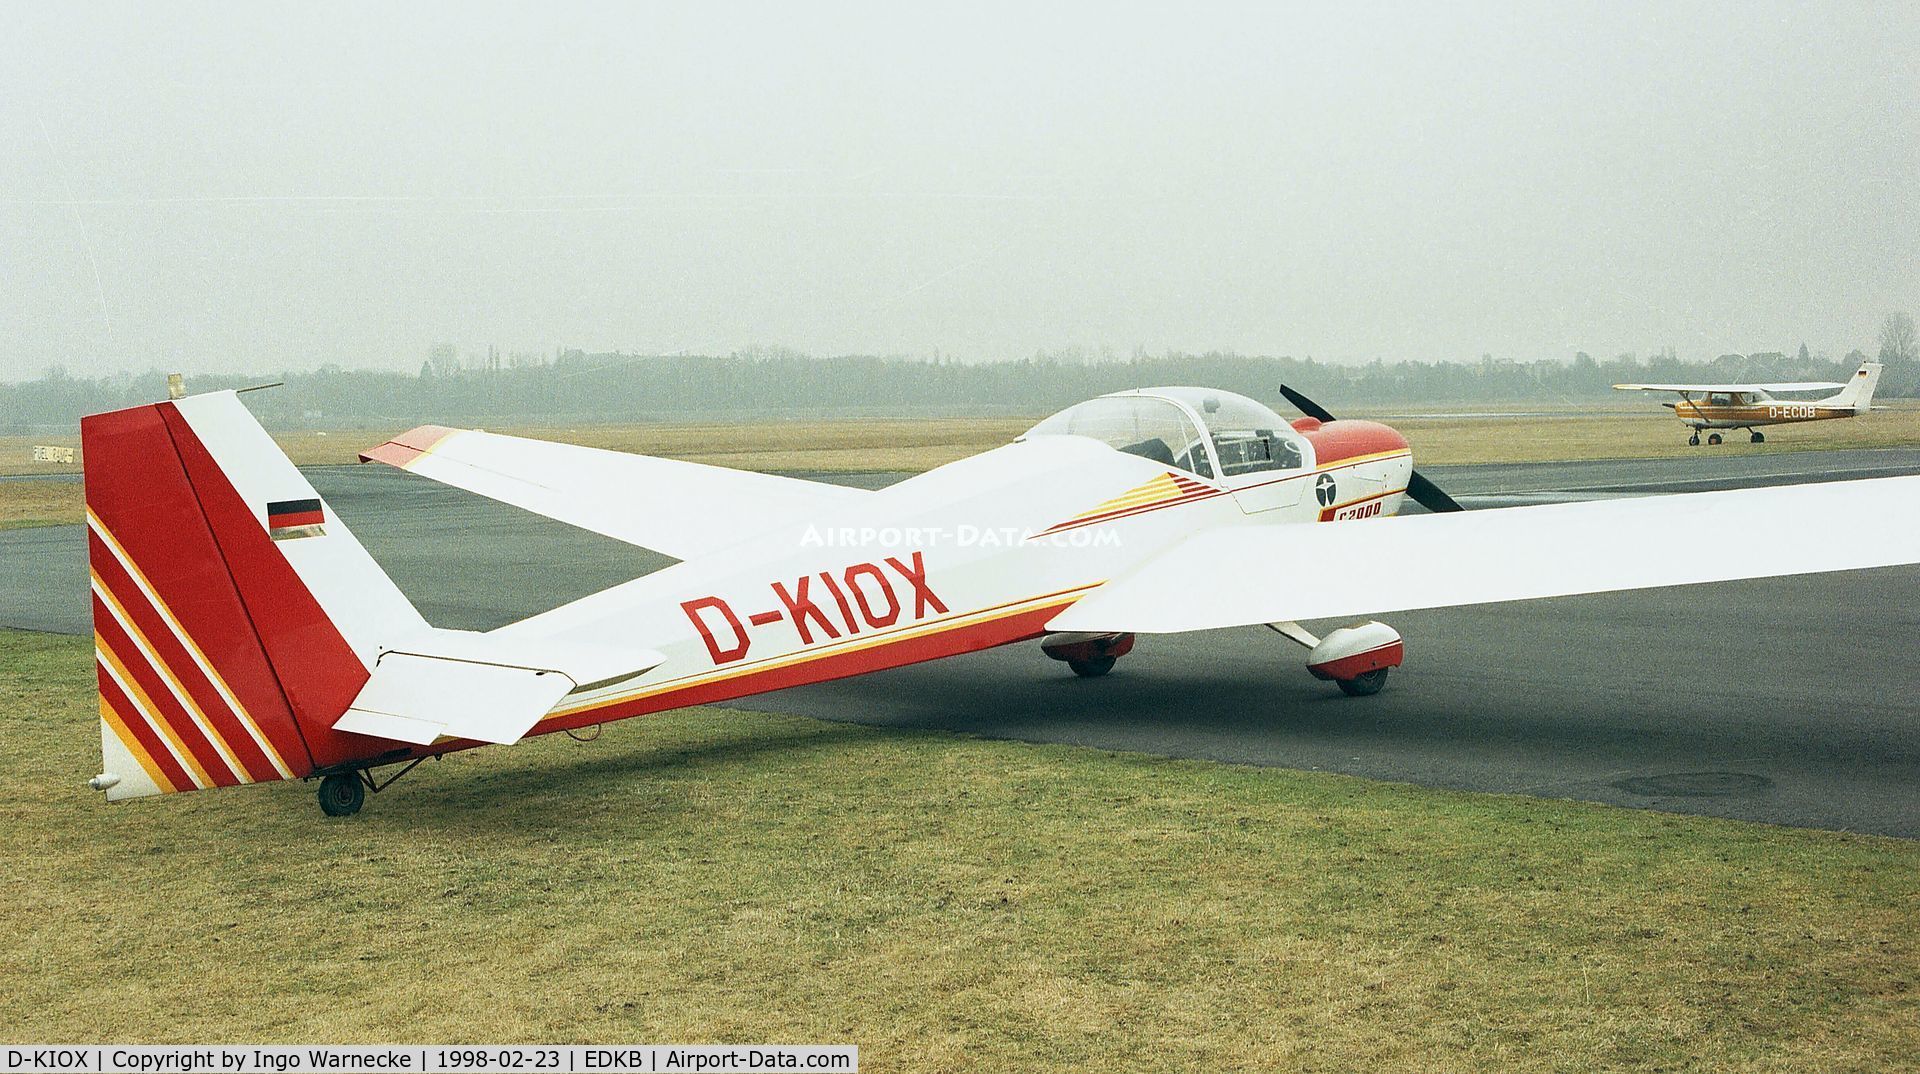 D-KIOX, Scheibe SF-25C Falke C/N 44507, Scheibe SF-25C Falke 2000 at Bonn-Hangelar airfield